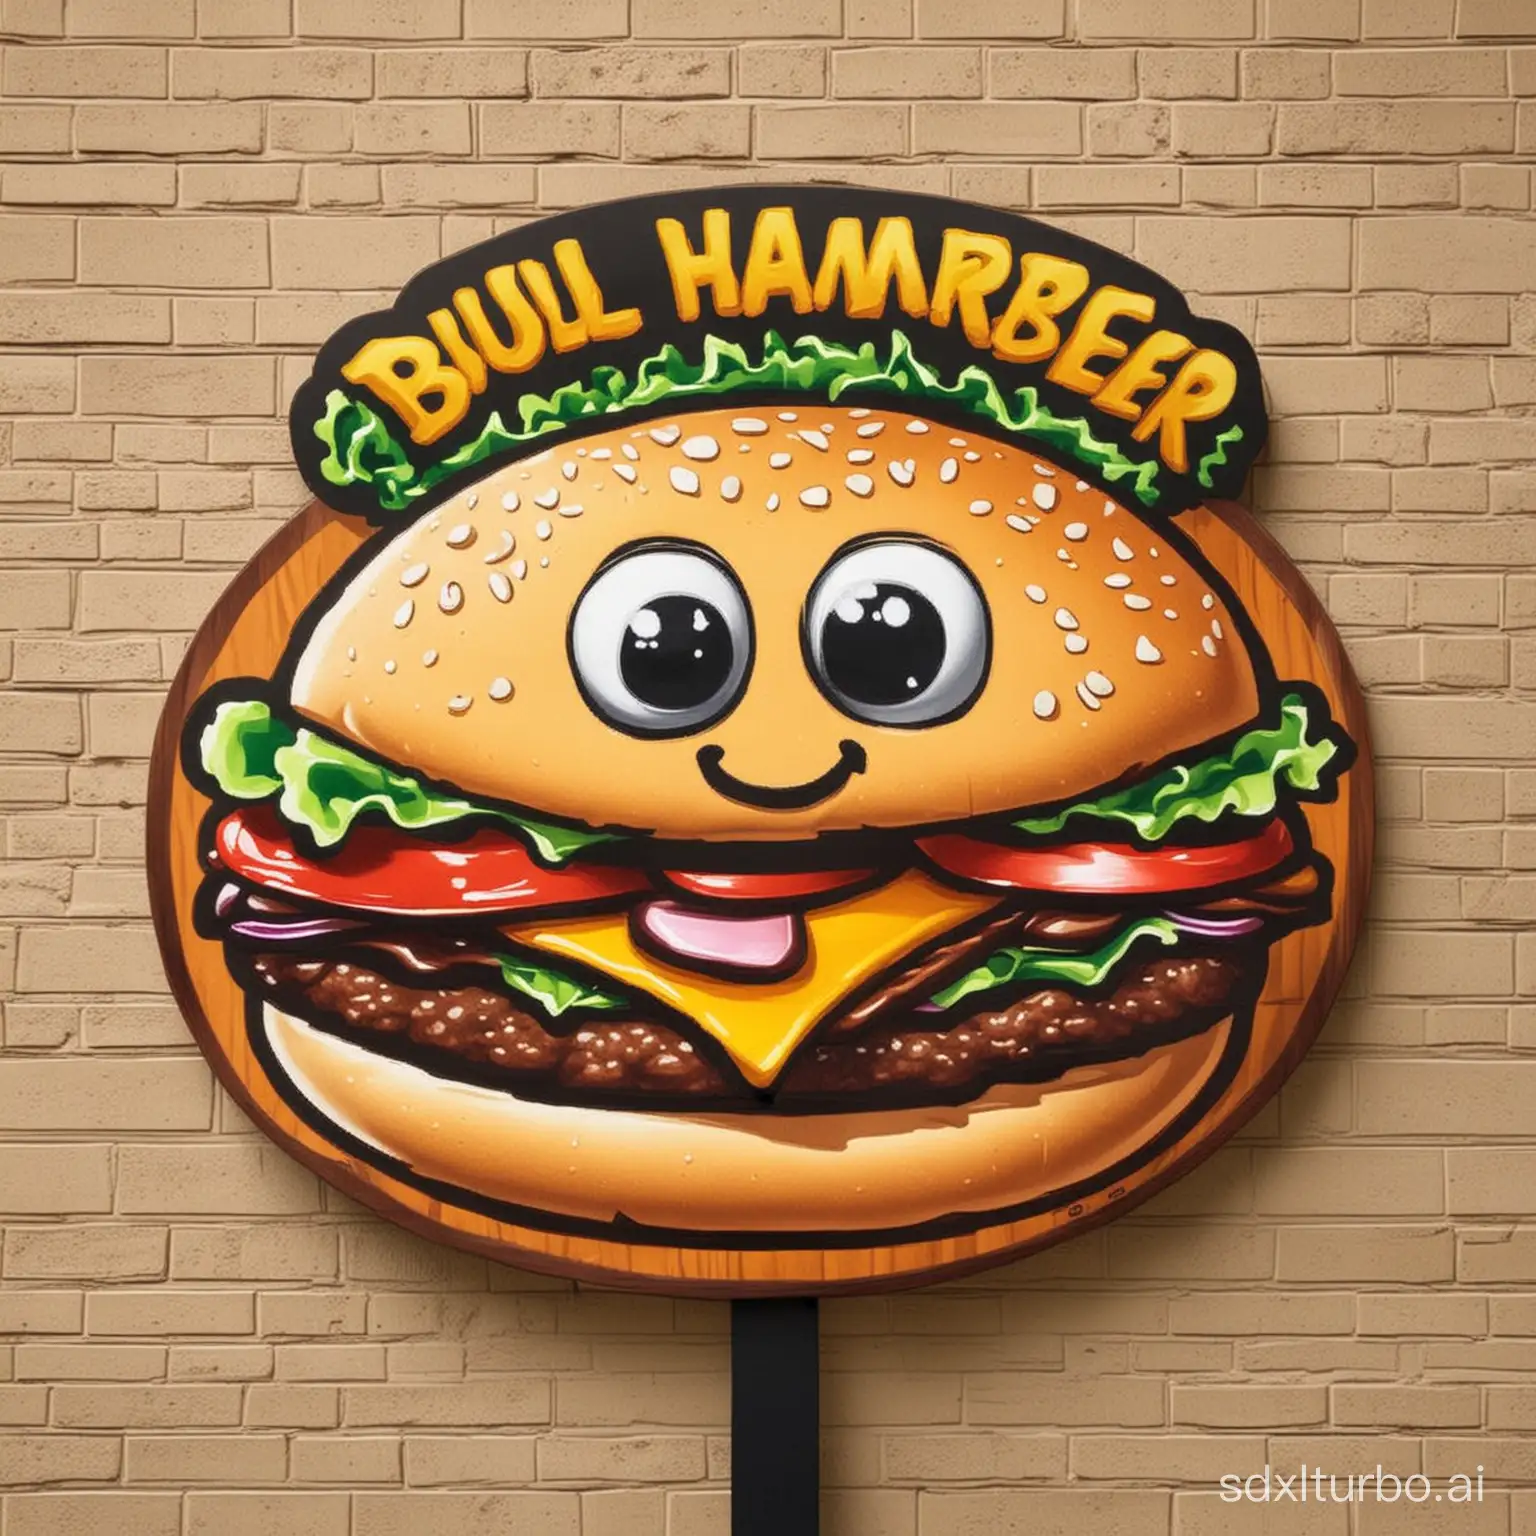 做一个卡通的汉堡的招牌，招牌名字为牛A汉堡，要吸引人